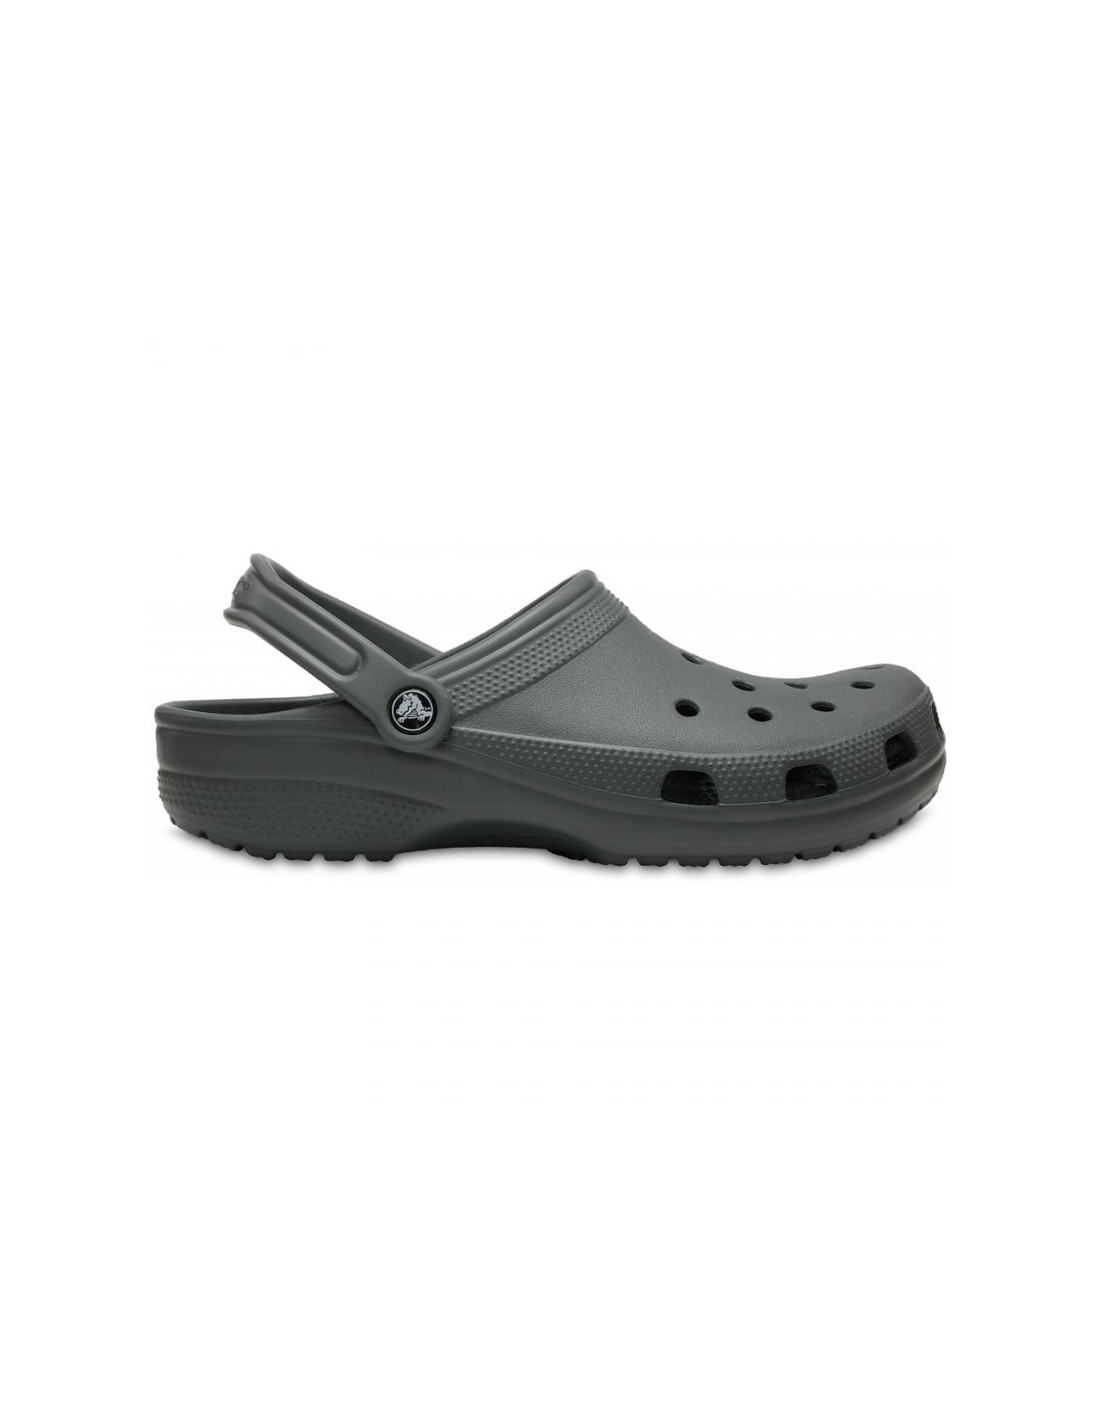 Crocs Classic M 10001 0DA shoes